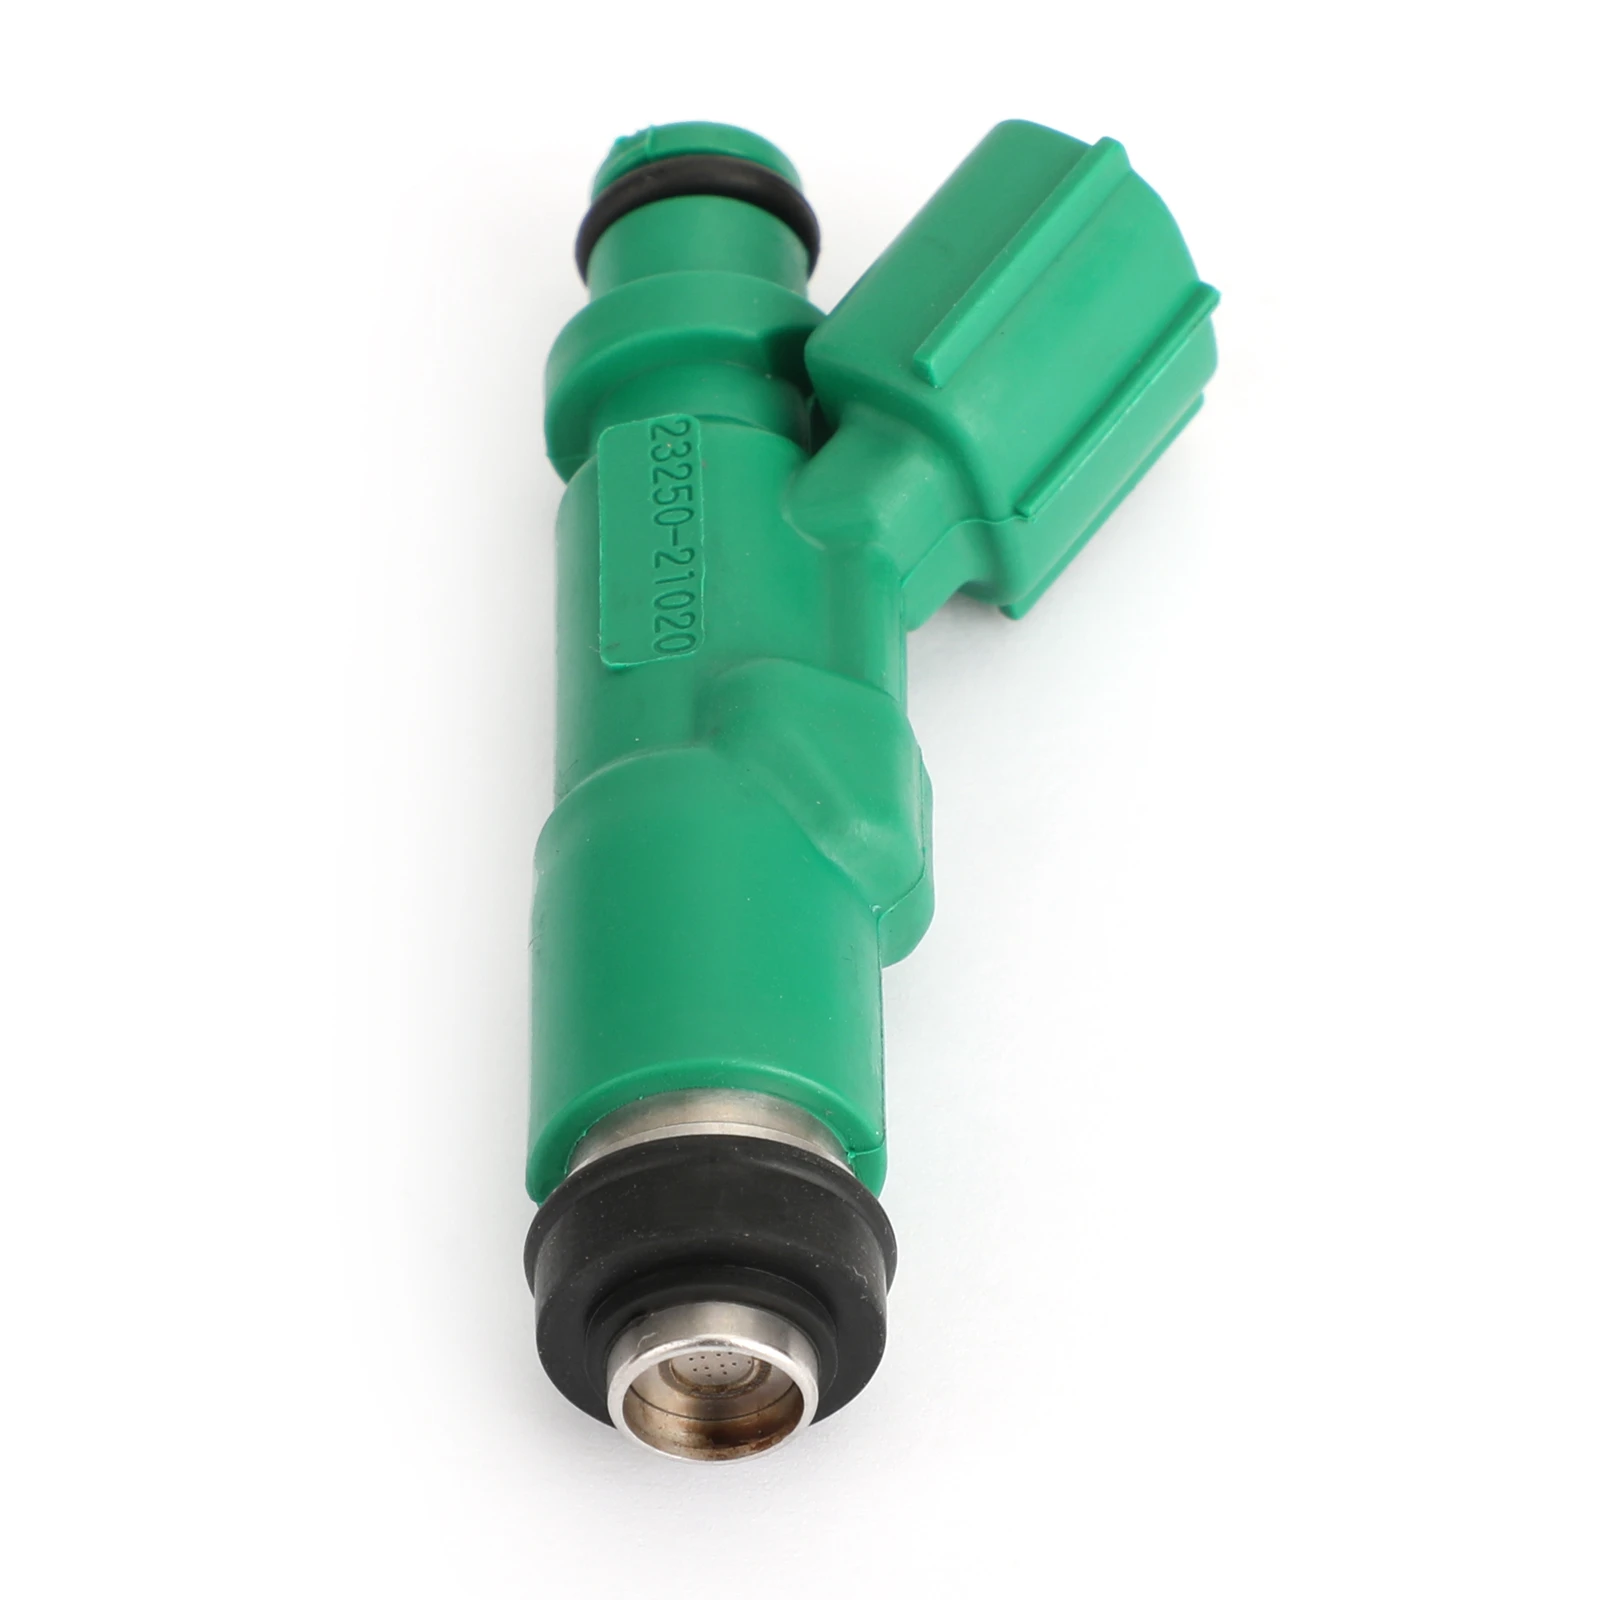 

Areyourshop 4PCS Fuel Injectors for TOYOTA Prius1.5L Scion Xa Xb 1.5L, Green